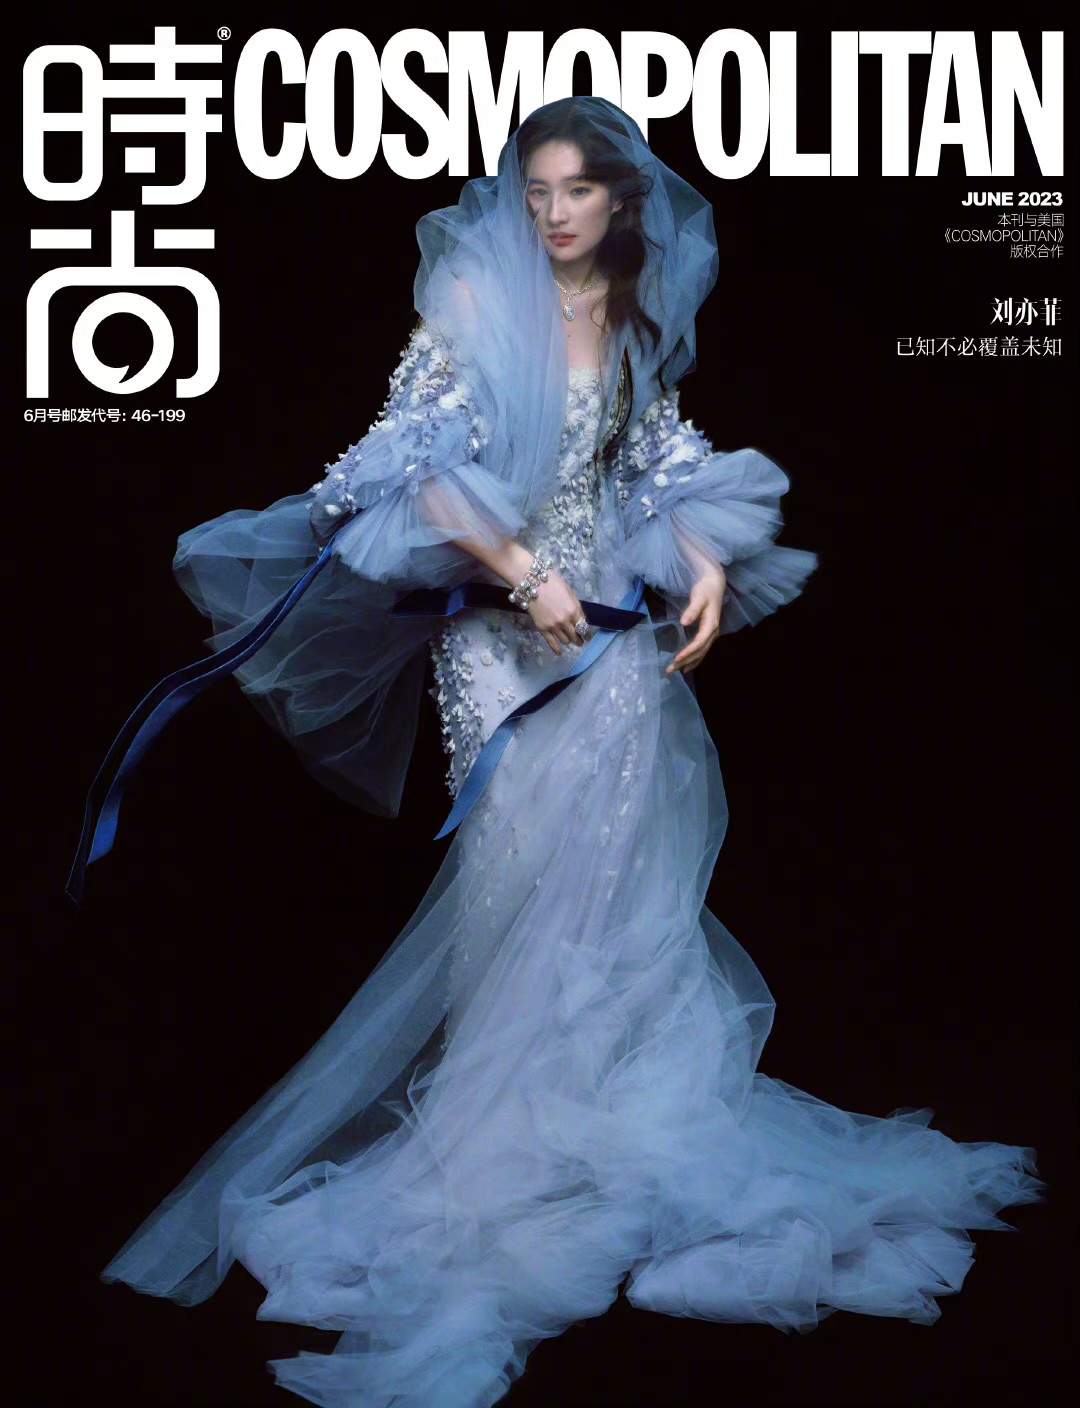 刘亦菲时尚cosmo六月刊封面,贝壳抹胸宛若黑暗女神,美惨了